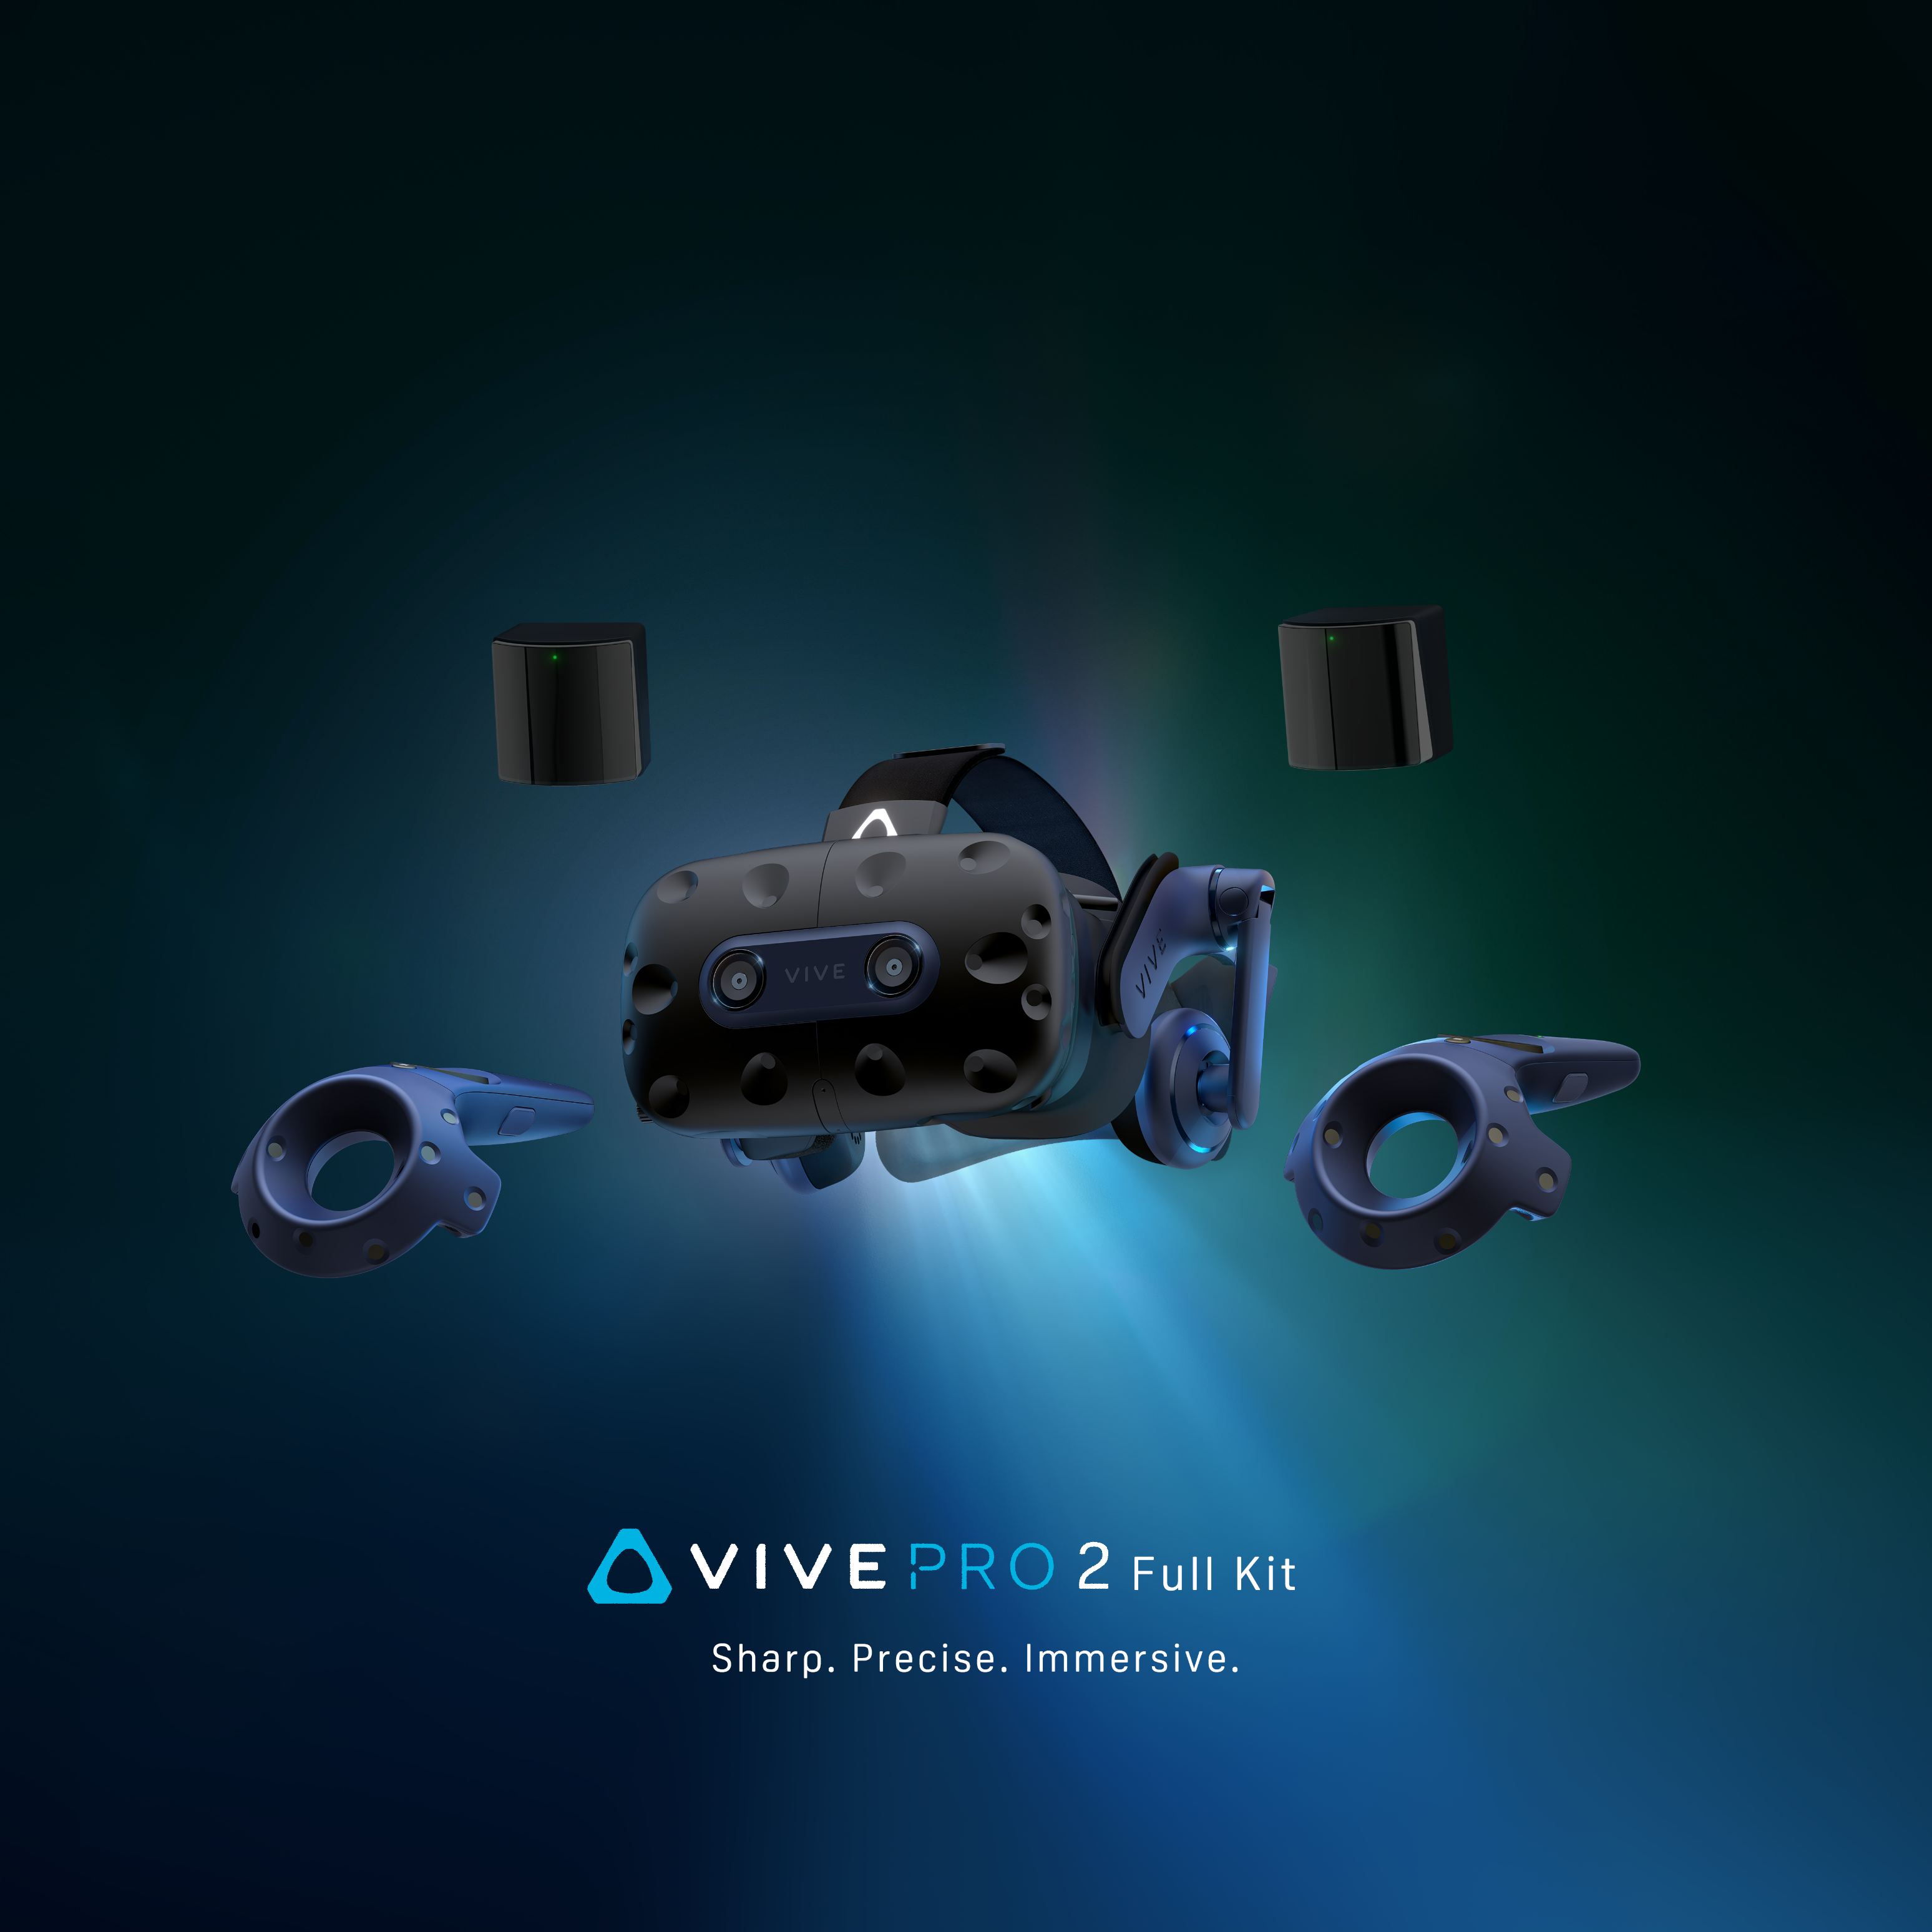 VIVE Pro 2 Full Kit VR headset